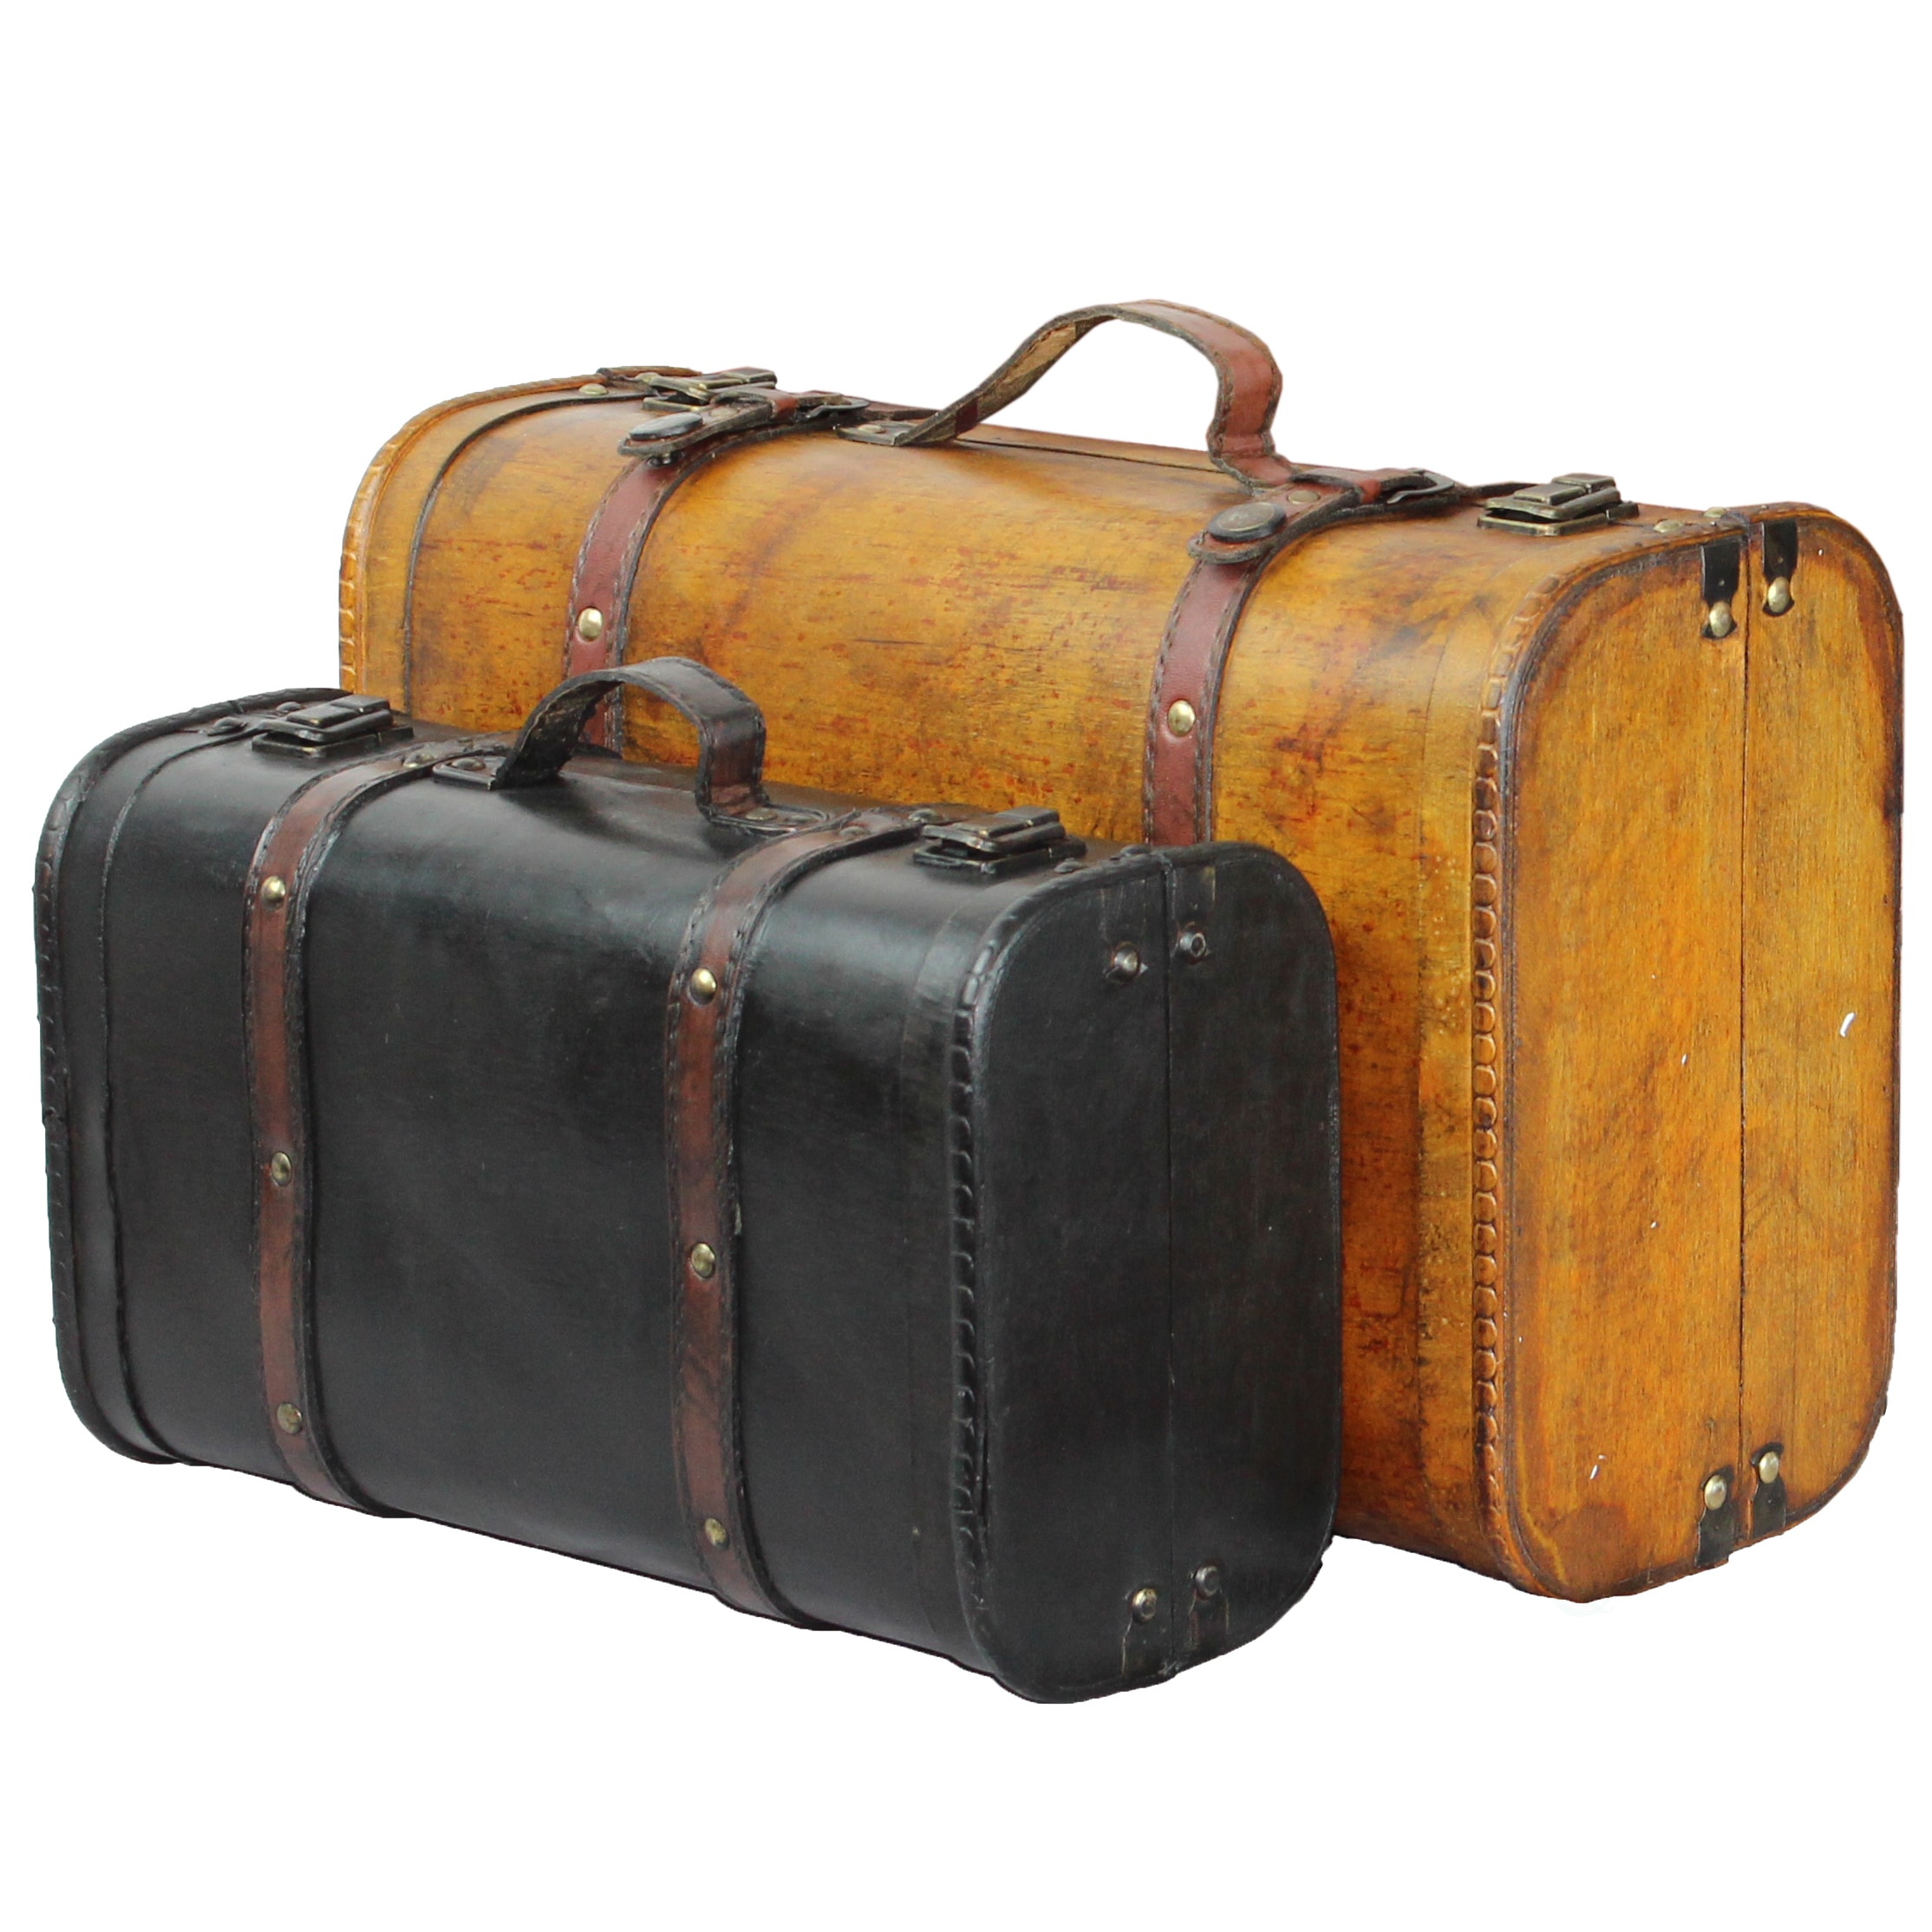 vintage suitcase set